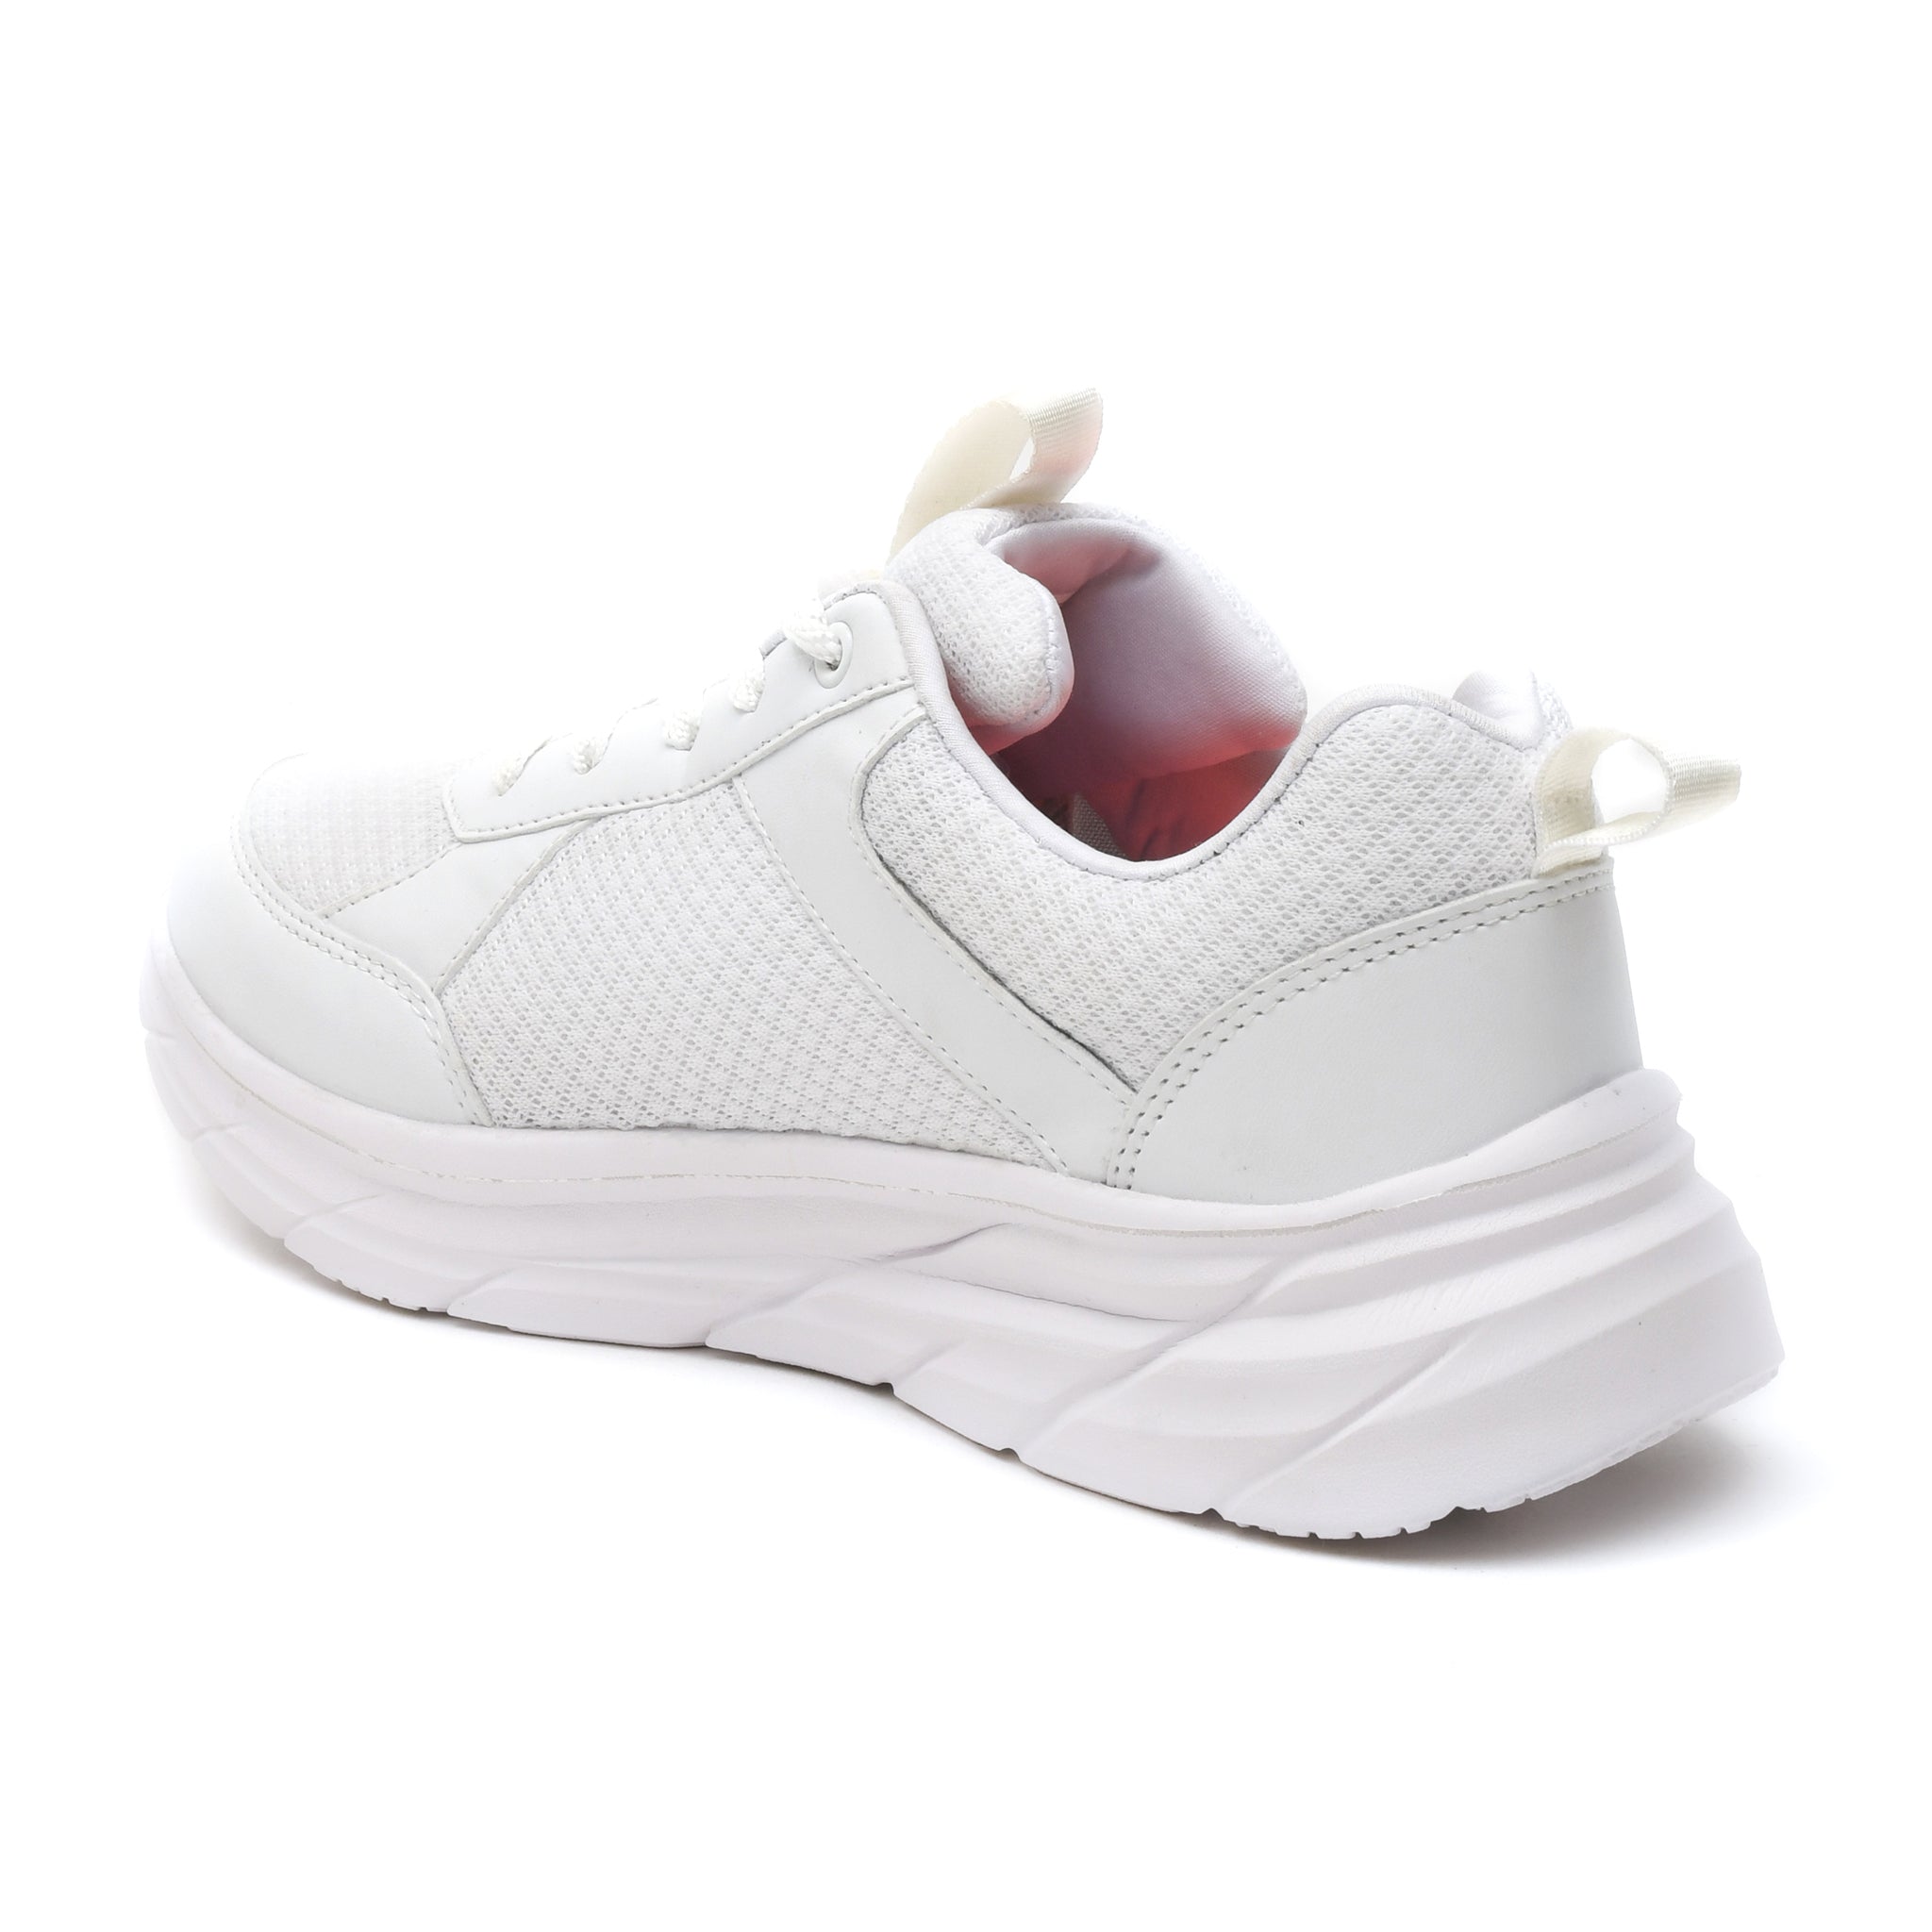 Impakto Urbanite Men's White Running Shoes